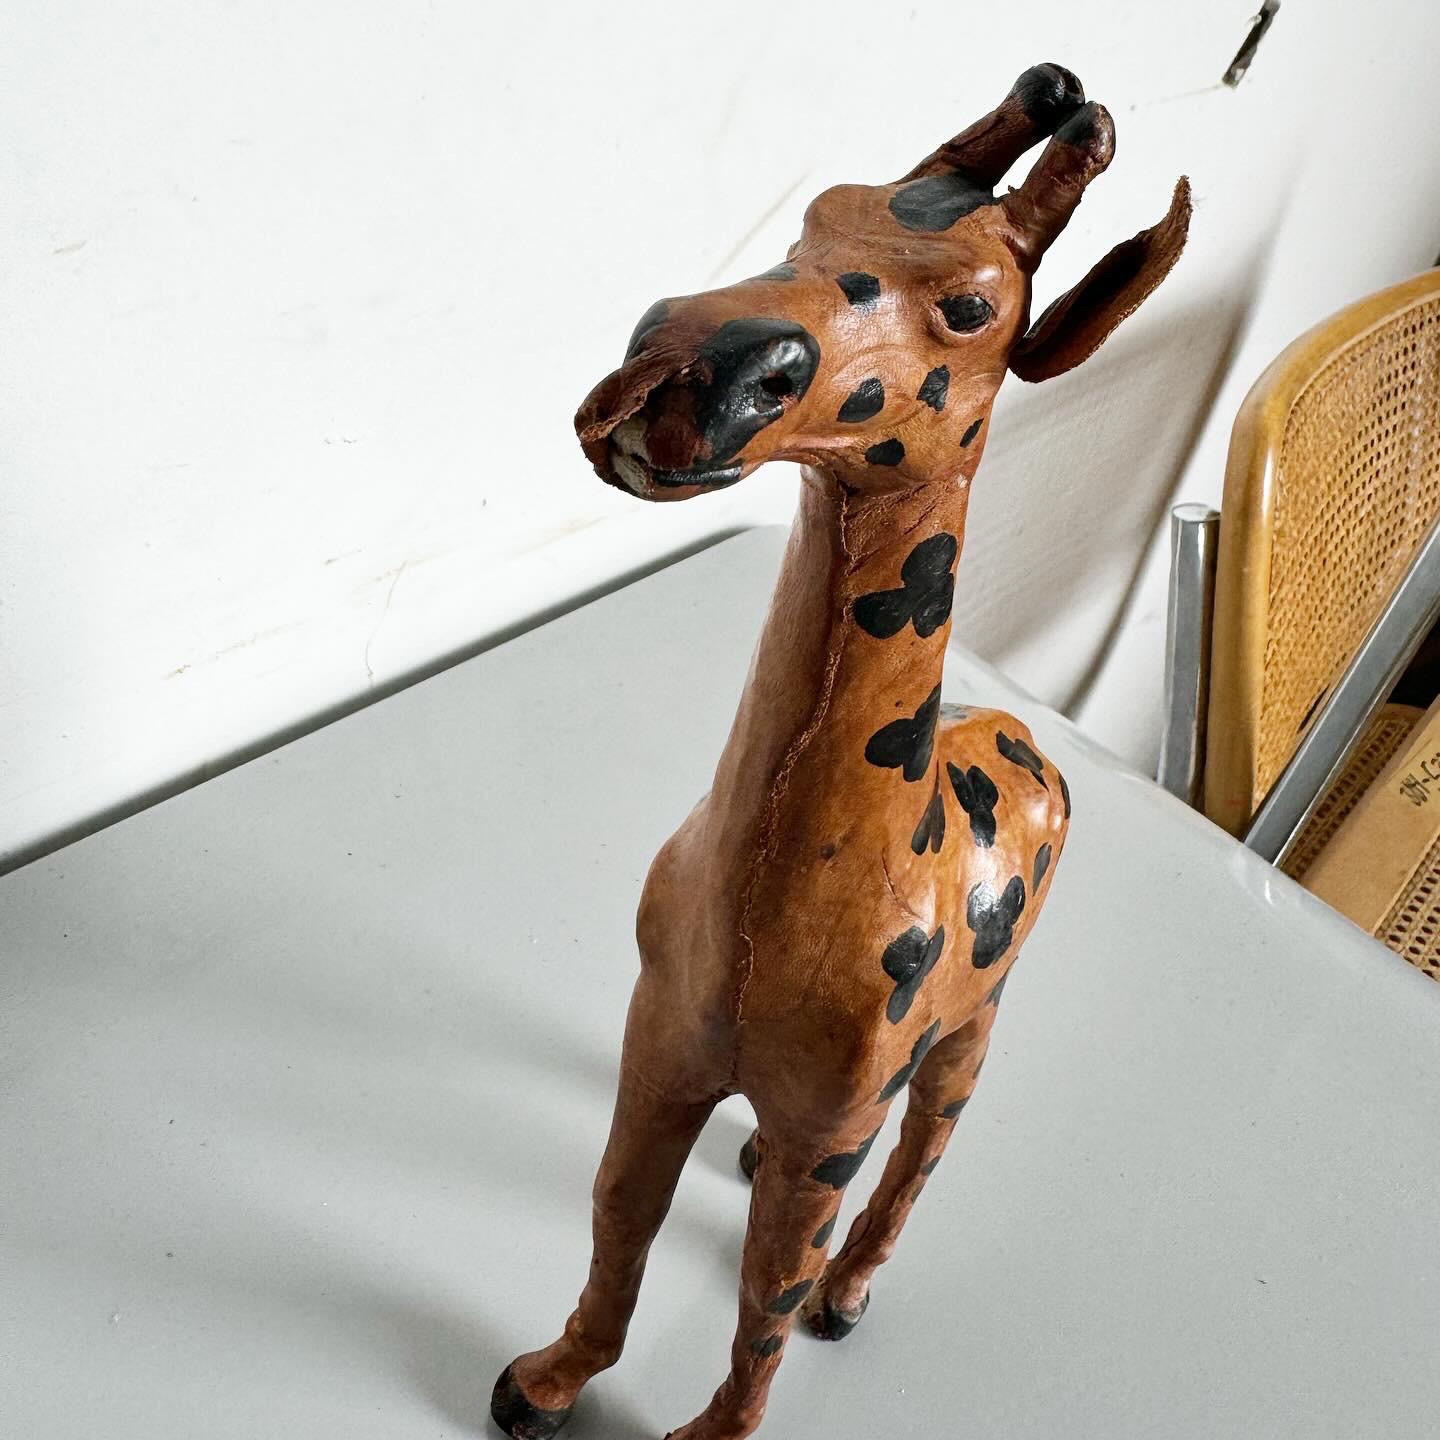 Élevez votre décor avec cet ensemble exquis de trois sculptures de girafes vintage ascendantes enveloppées de cuir. Chaque pièce est enveloppée avec art dans du cuir, mettant en valeur les textures et les teintes naturelles. Les sculptures, de